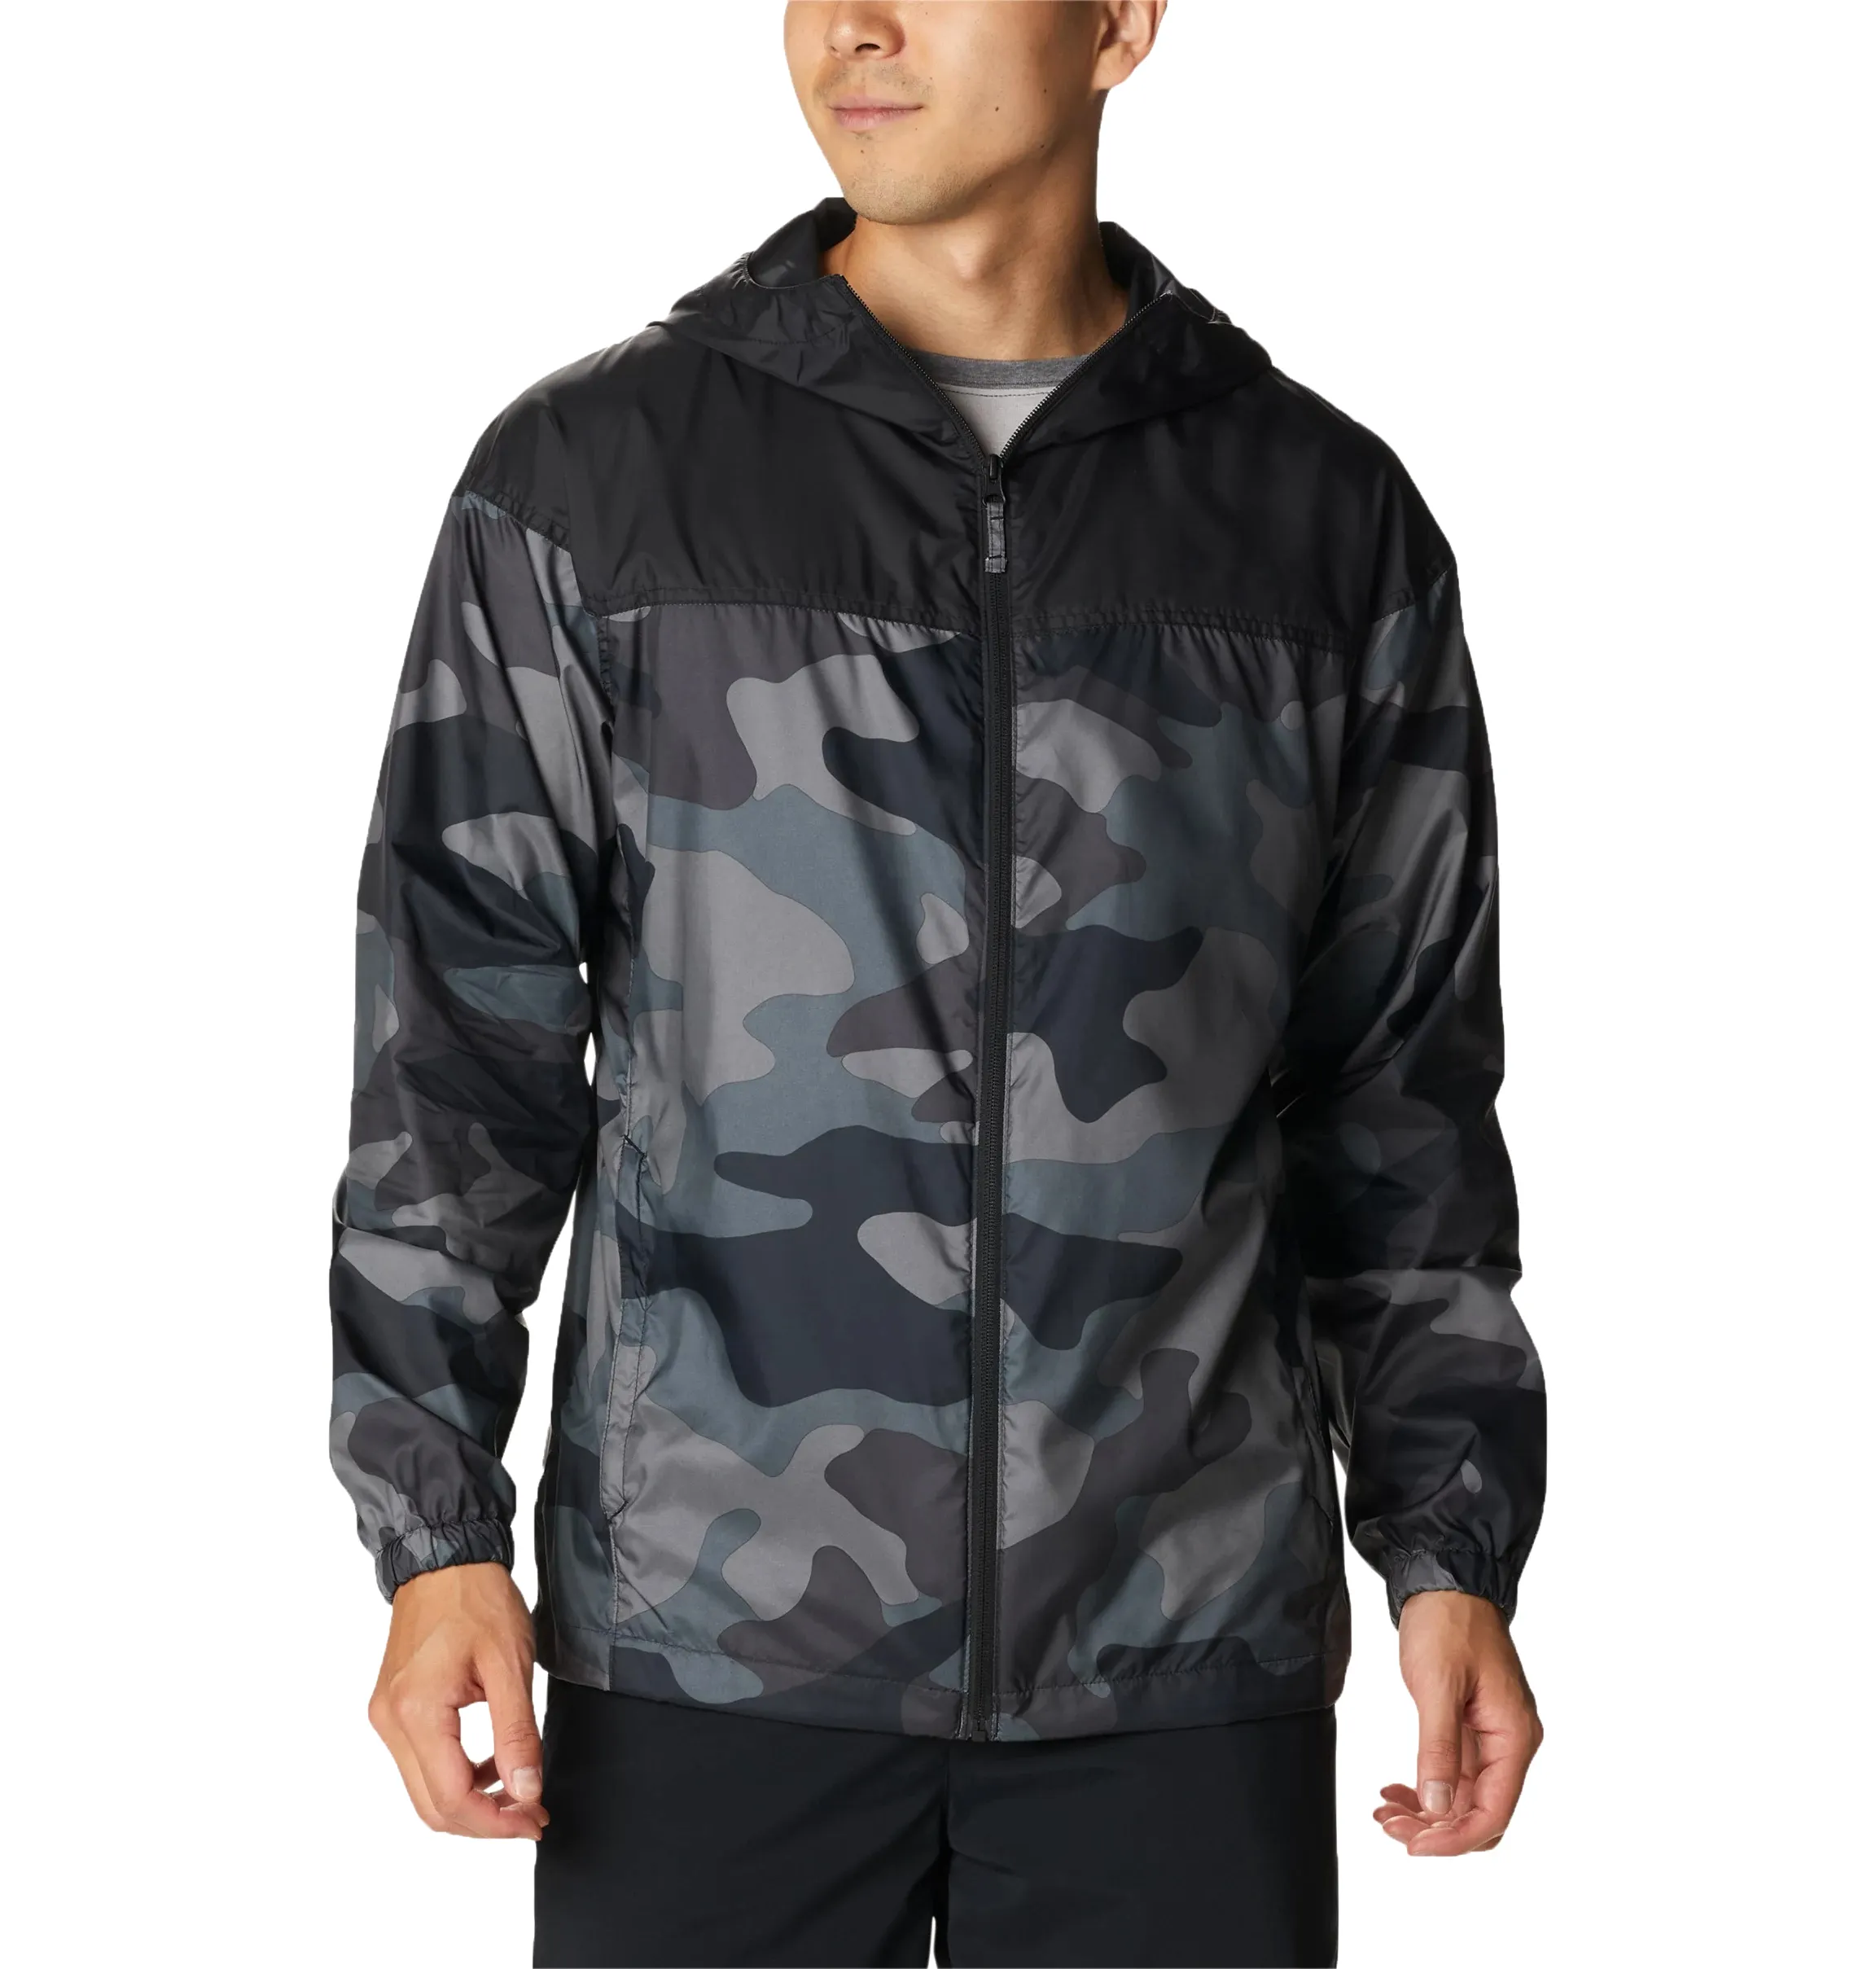 도매 남자의 빈 디자인 소프트 쉘 재킷 실행 바람 차단기 재킷 야외 남성 재킷 저렴한 비용 la 비용